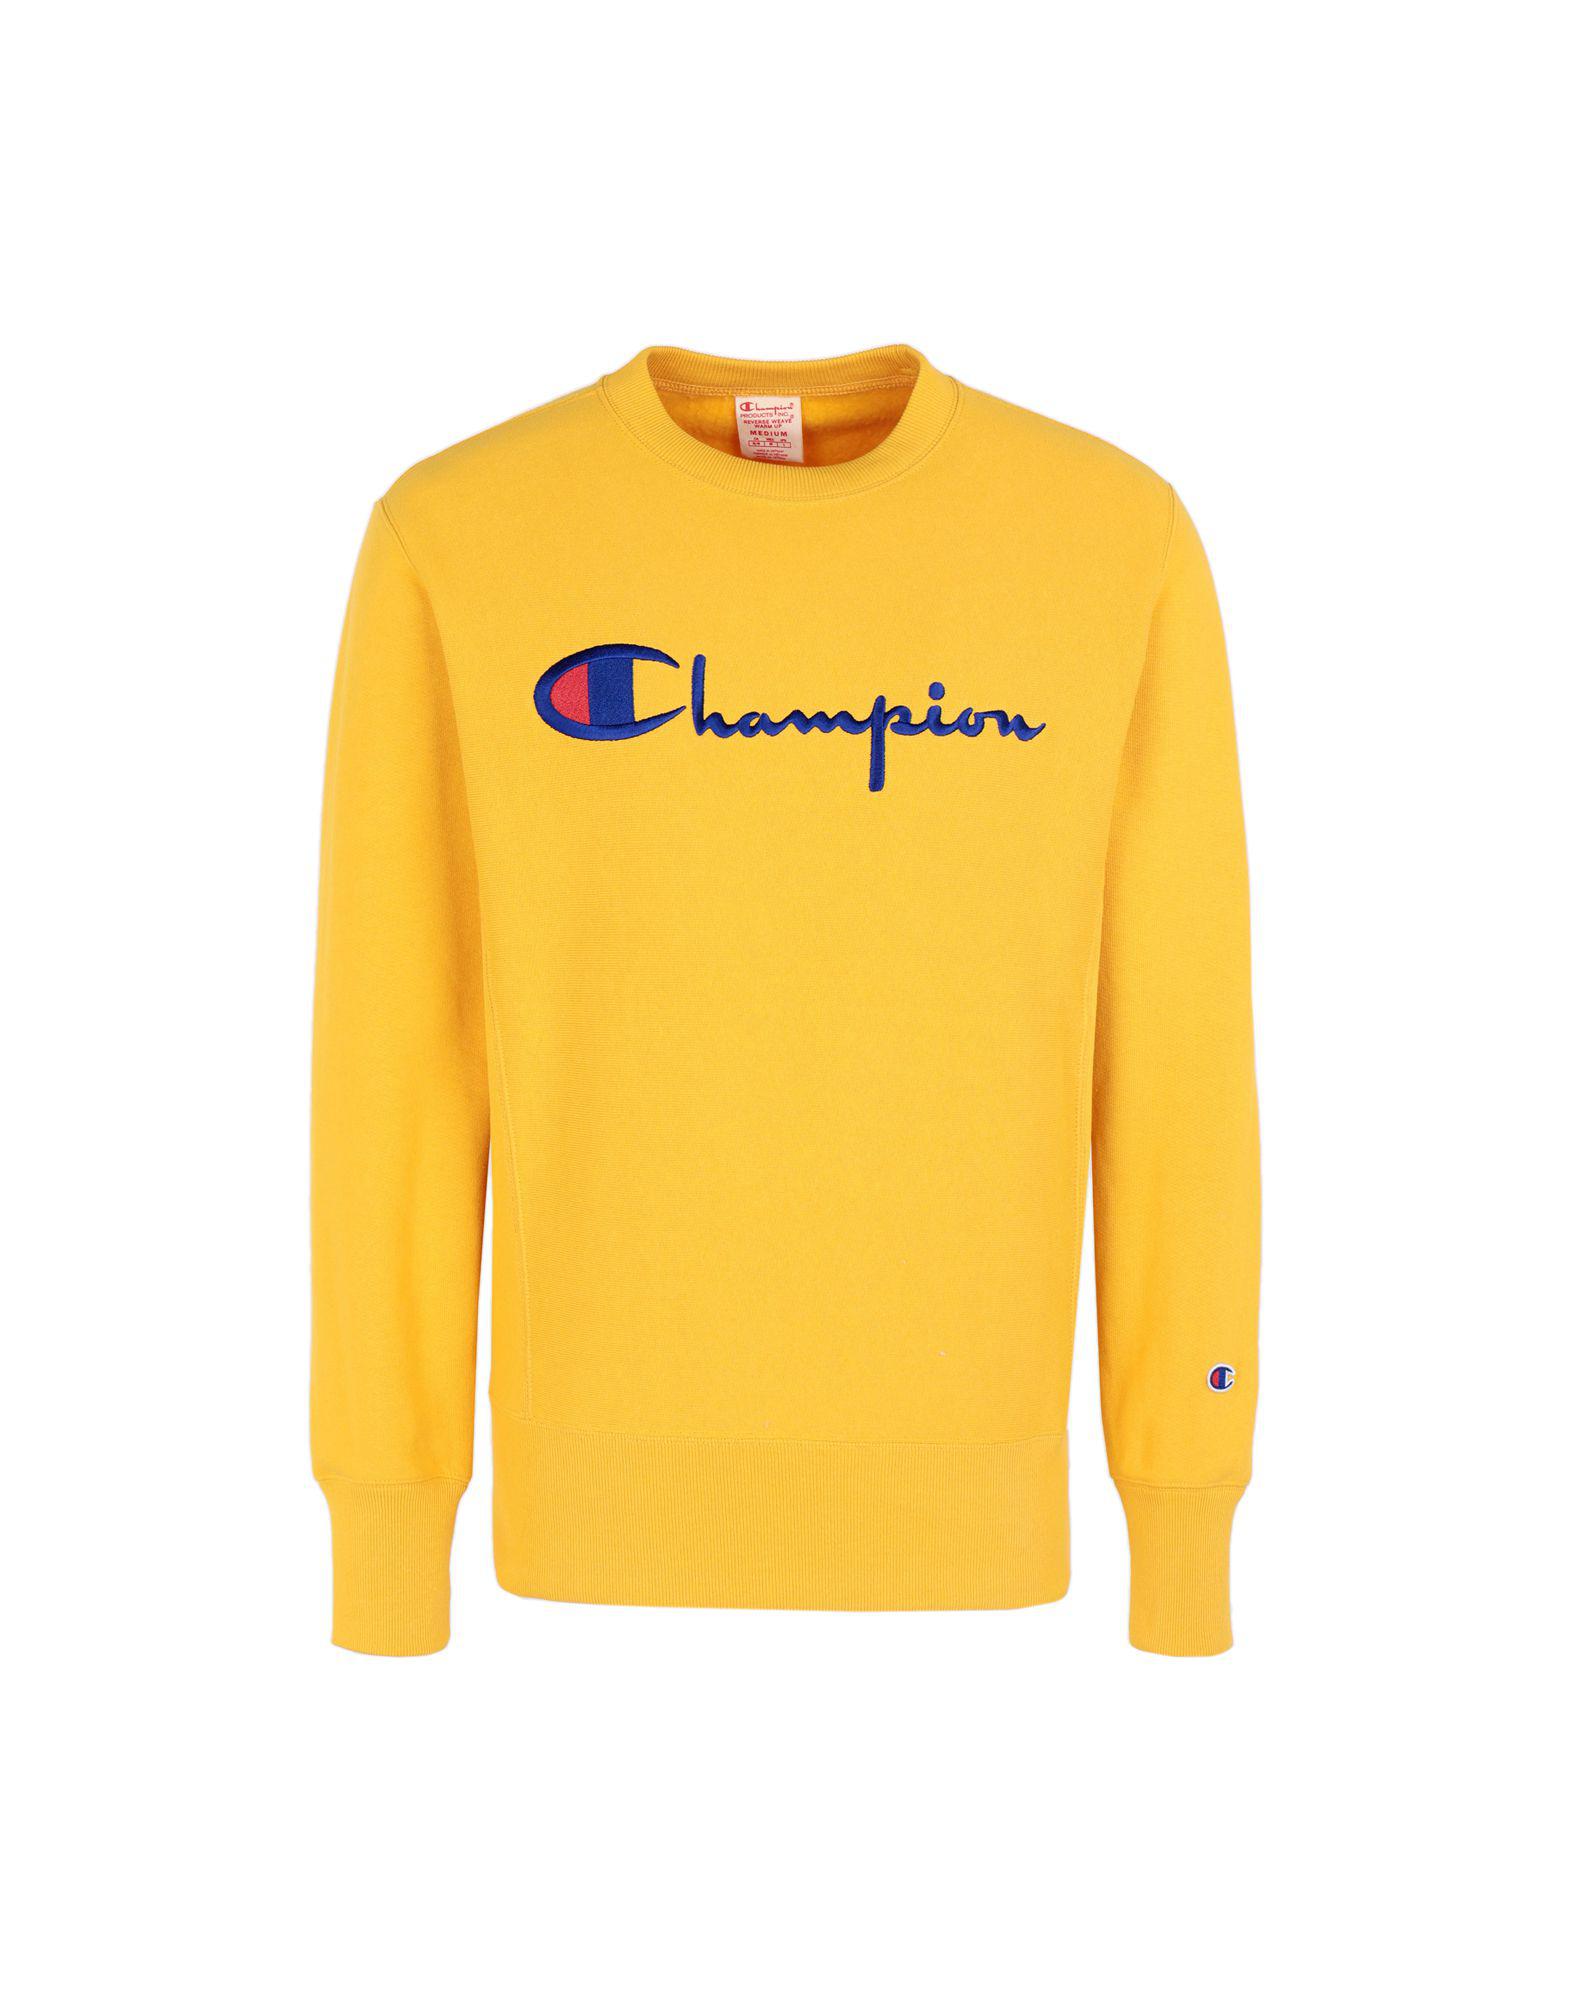 yellow champion sweatshirt men